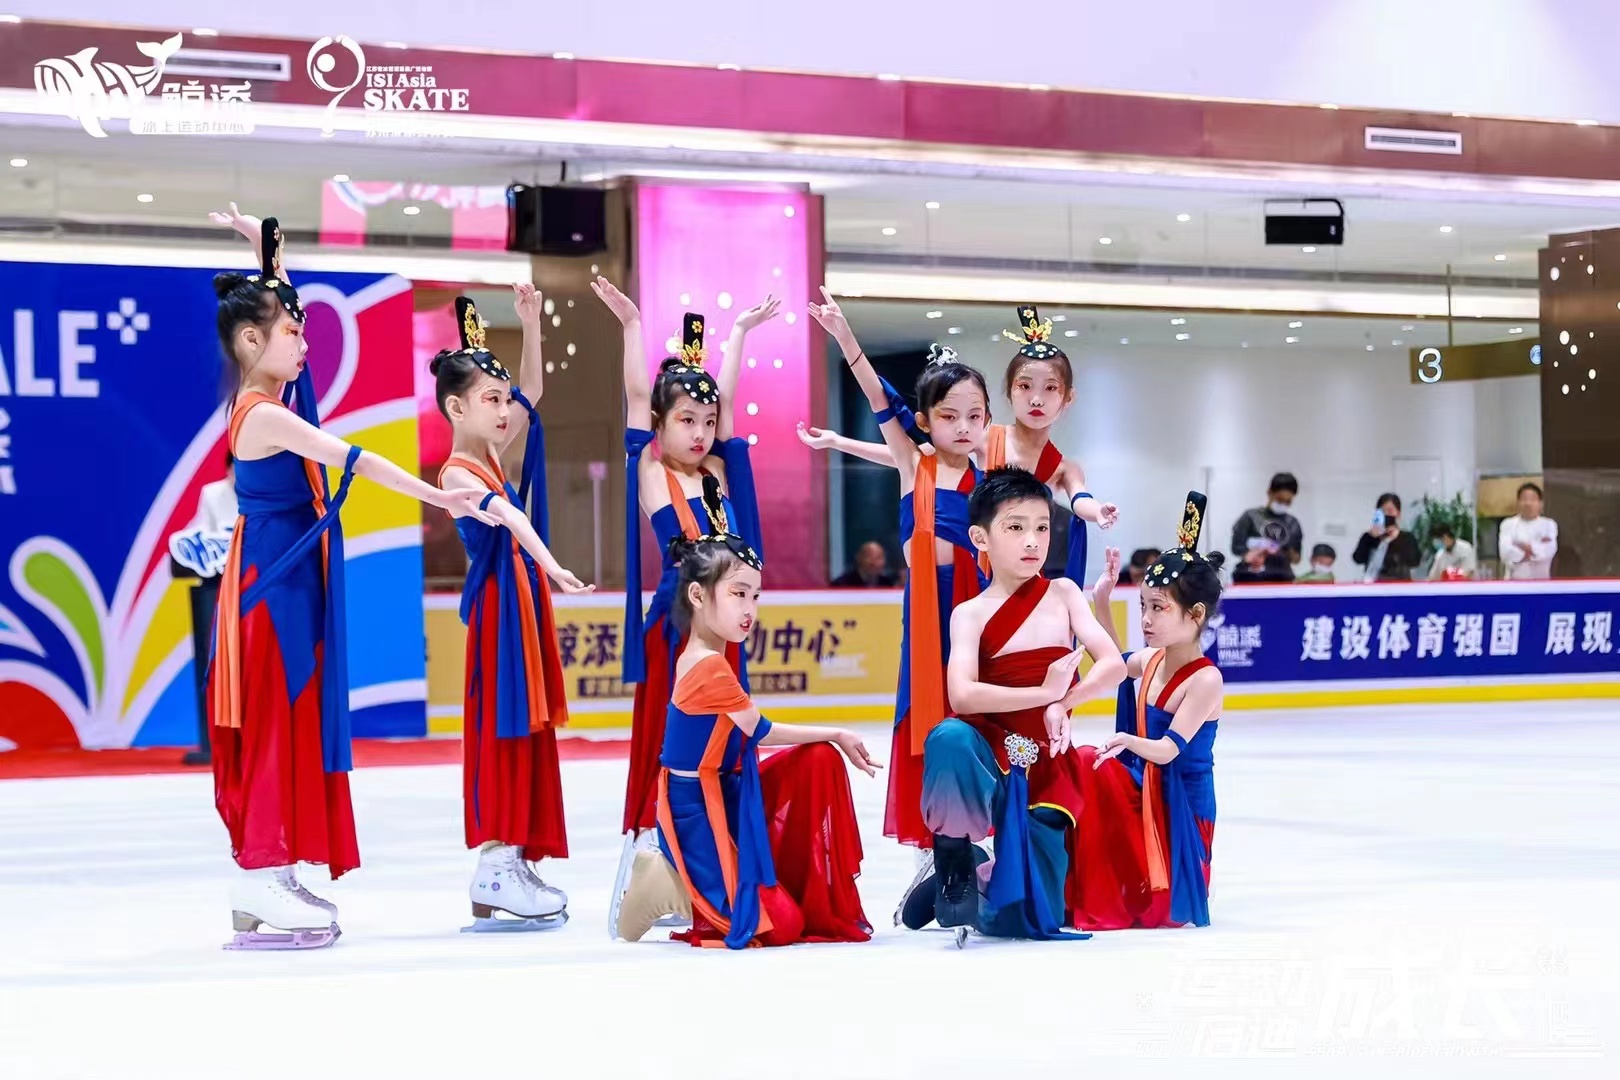 ISIAsia Skate Suzhou 2022